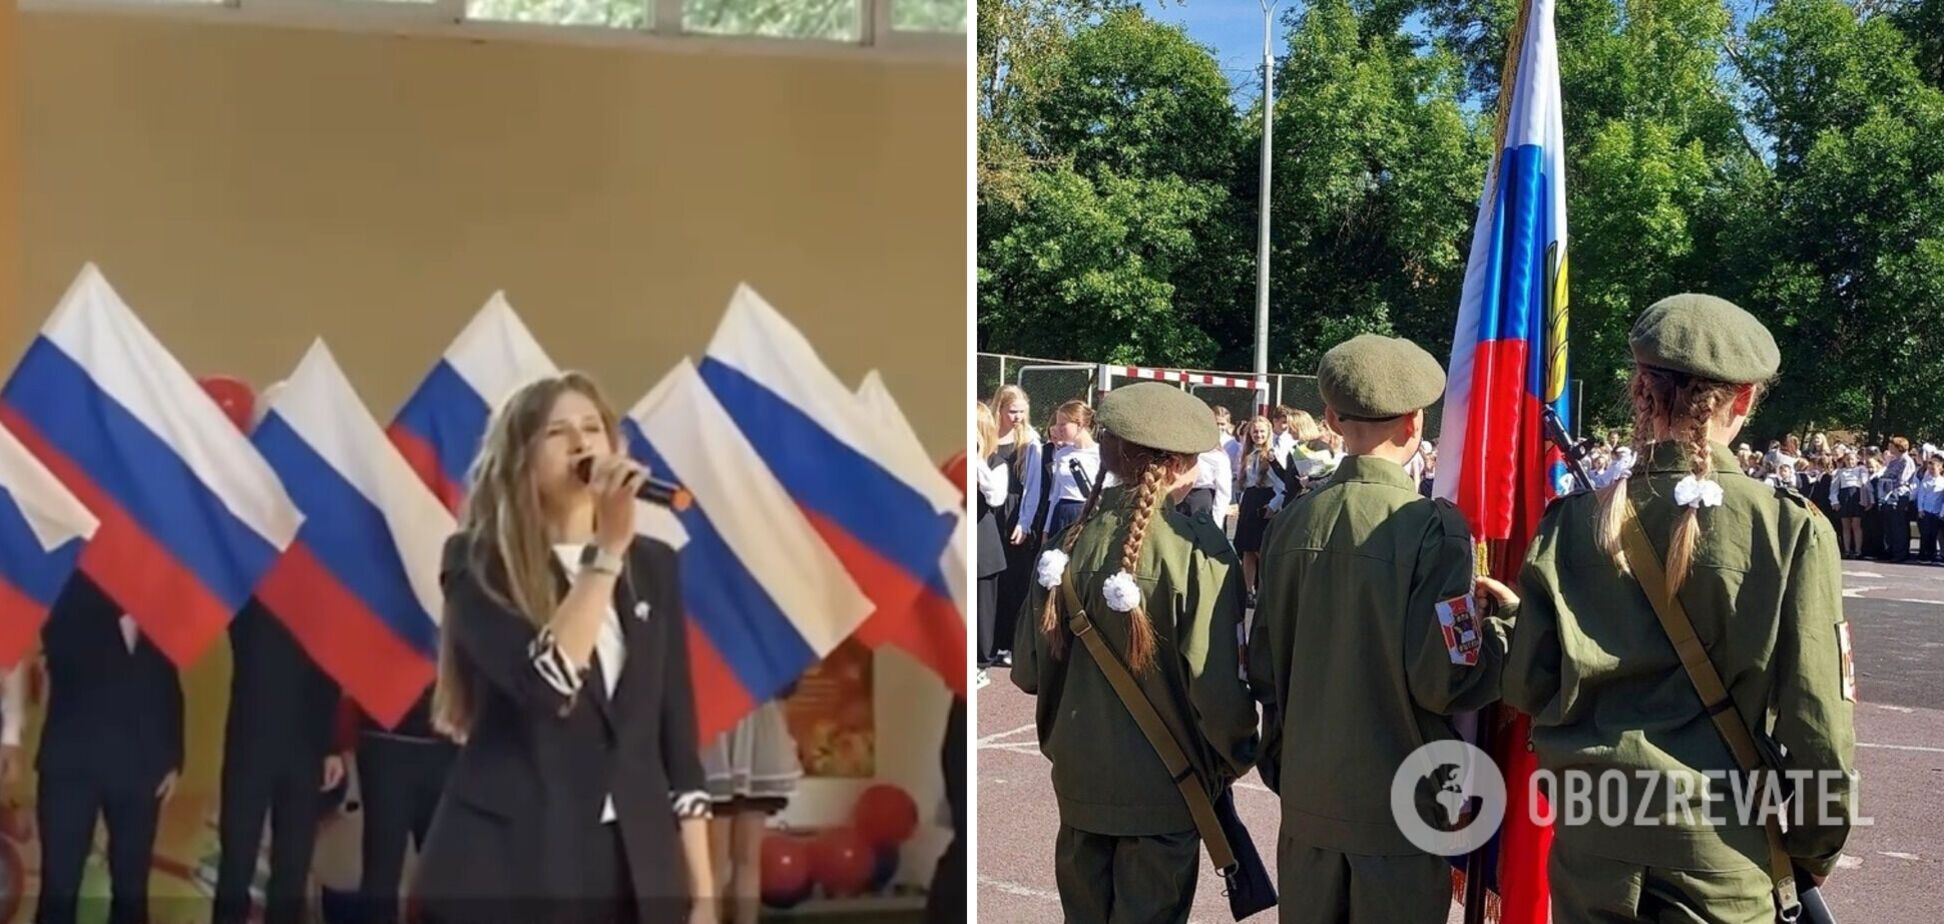 Тетради с 'вагнерами', дети в военной форме и пропаганда: как в России превратили День знаний в 'победобесие'